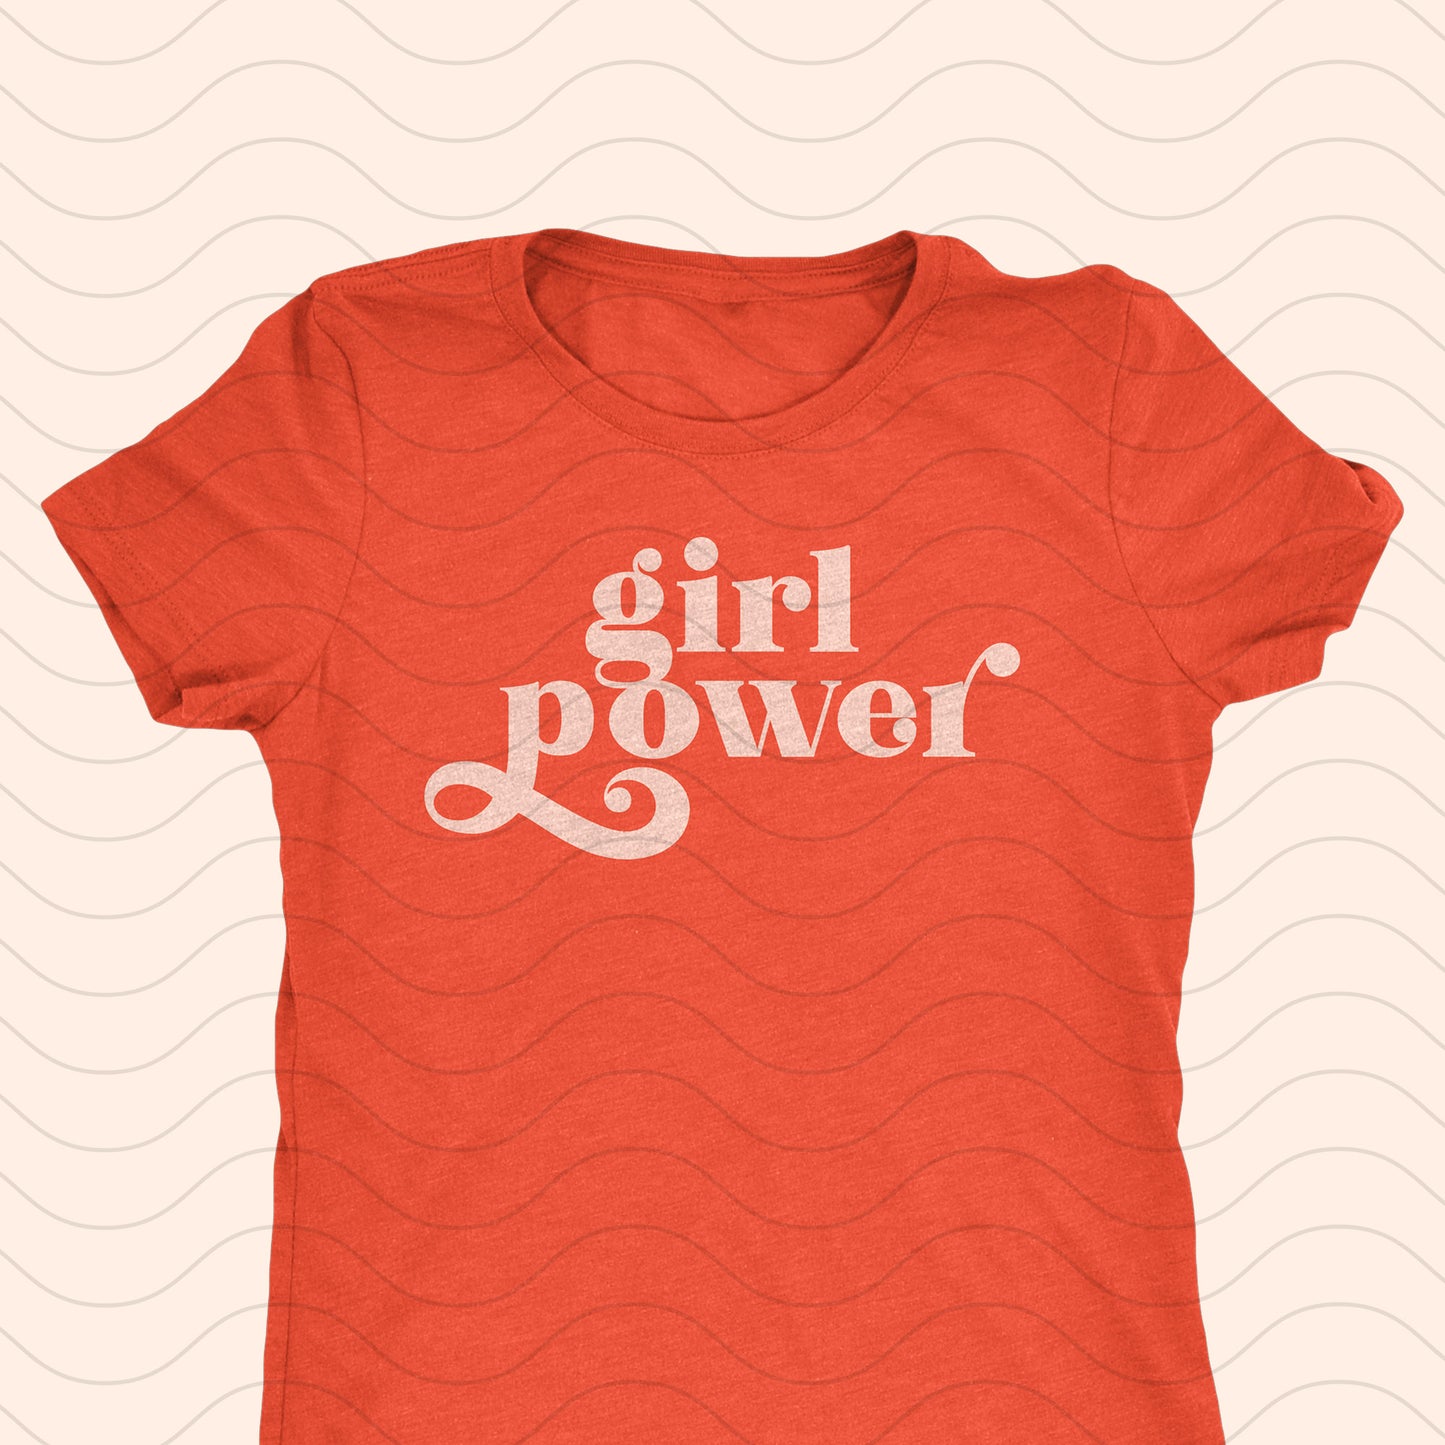 Girl Power – Cricut Design